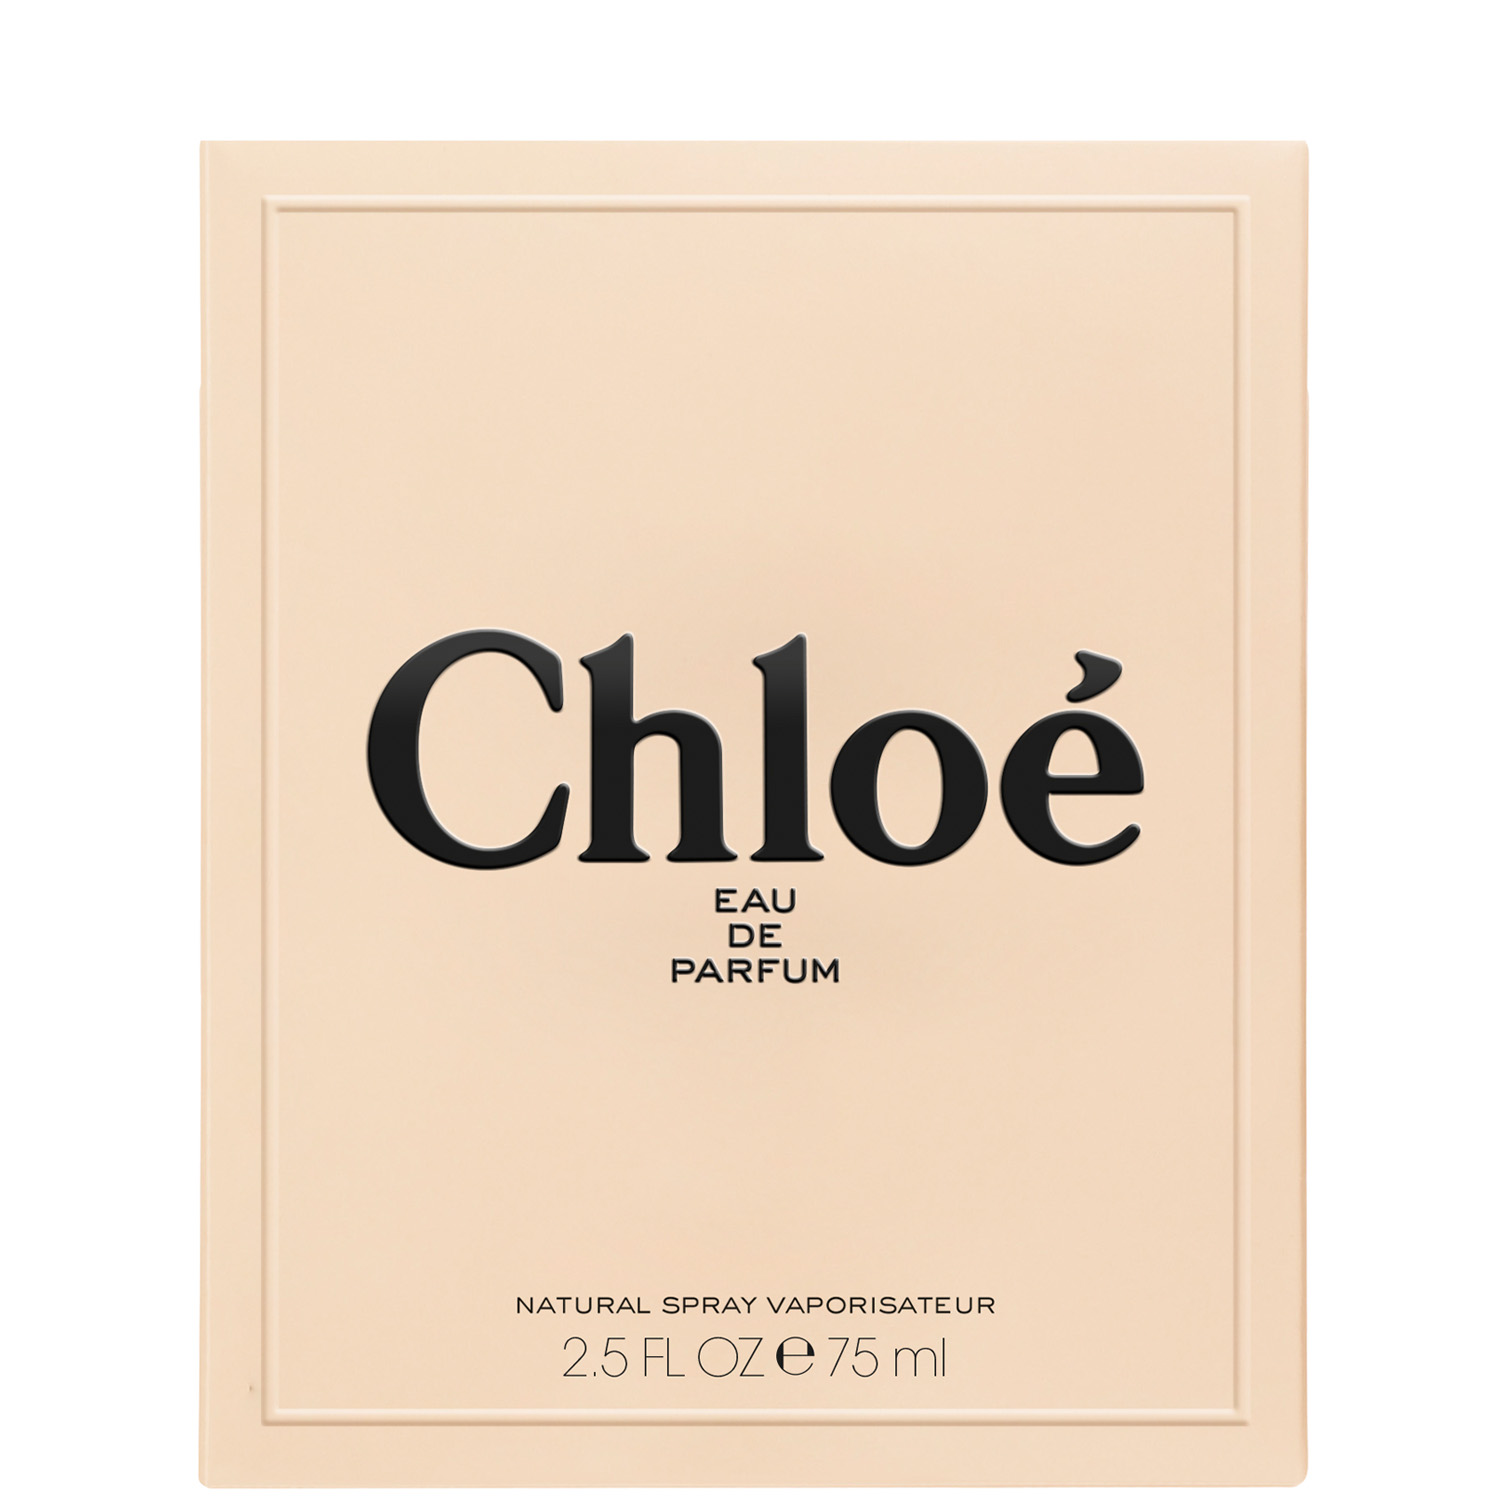 Chloé by Chloé Eau de Parfum 75ml